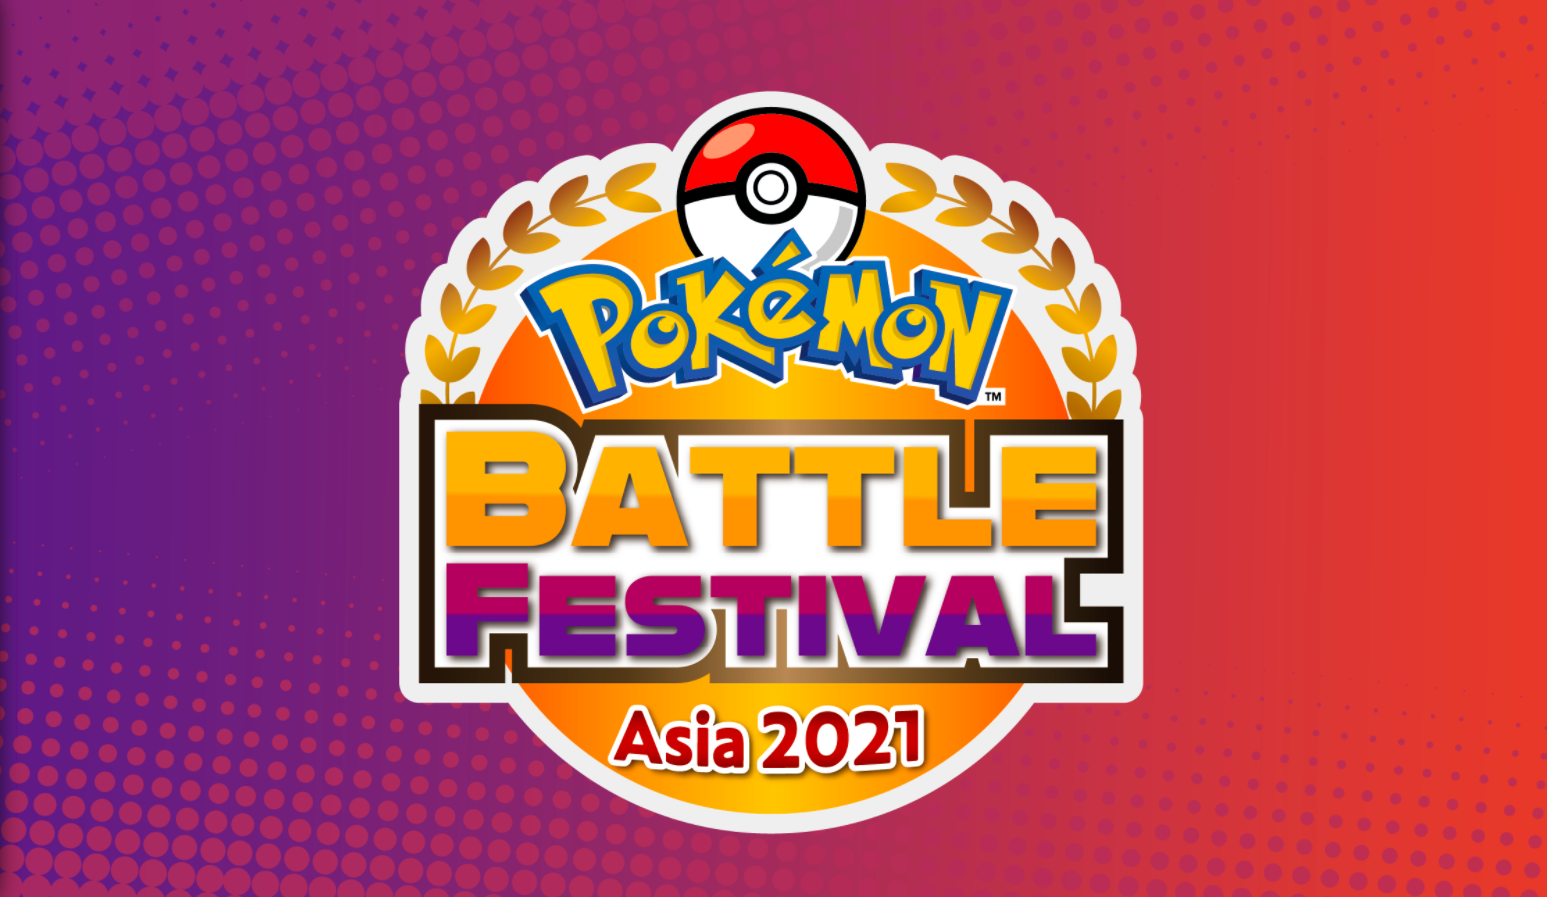 Pokémon Battle Festival Asia 2021 การท้าประลองของวงไอดอล และอินฟลูเอนเซอร์จากหลากหลายภูมิภาค